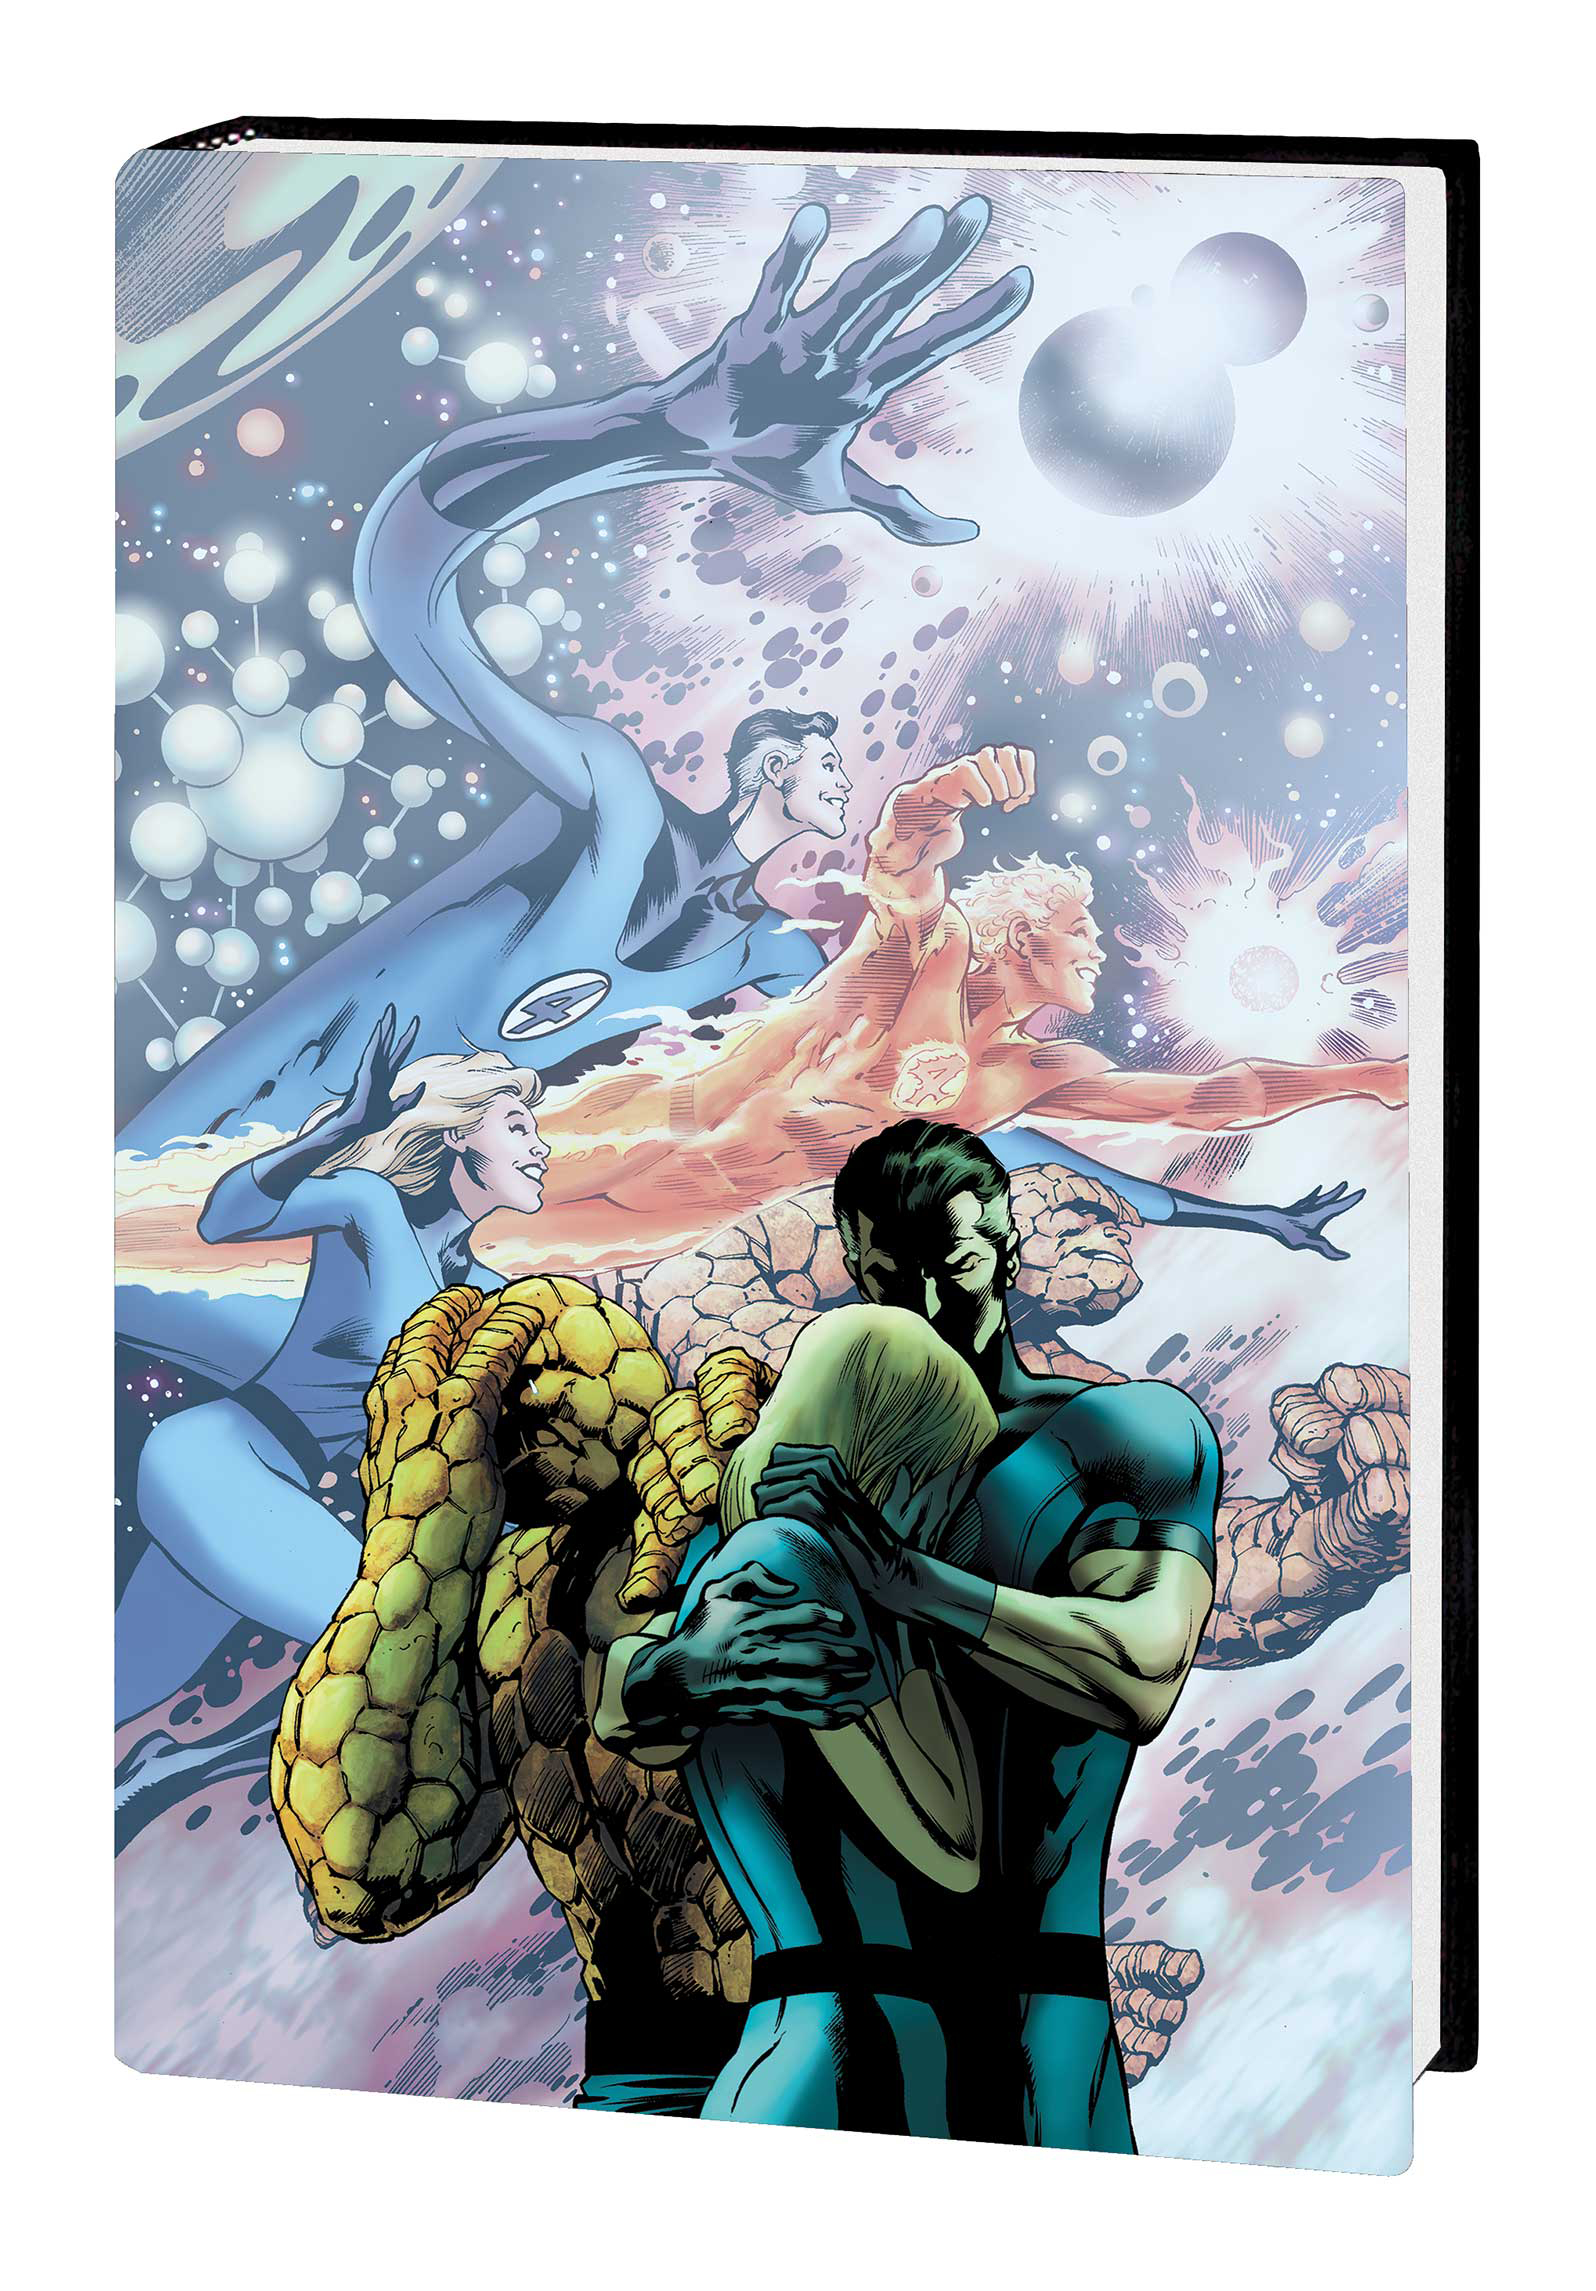 Fantastic Four Hickman Omnibus Hardcover Volume 1 Davis Final Issue